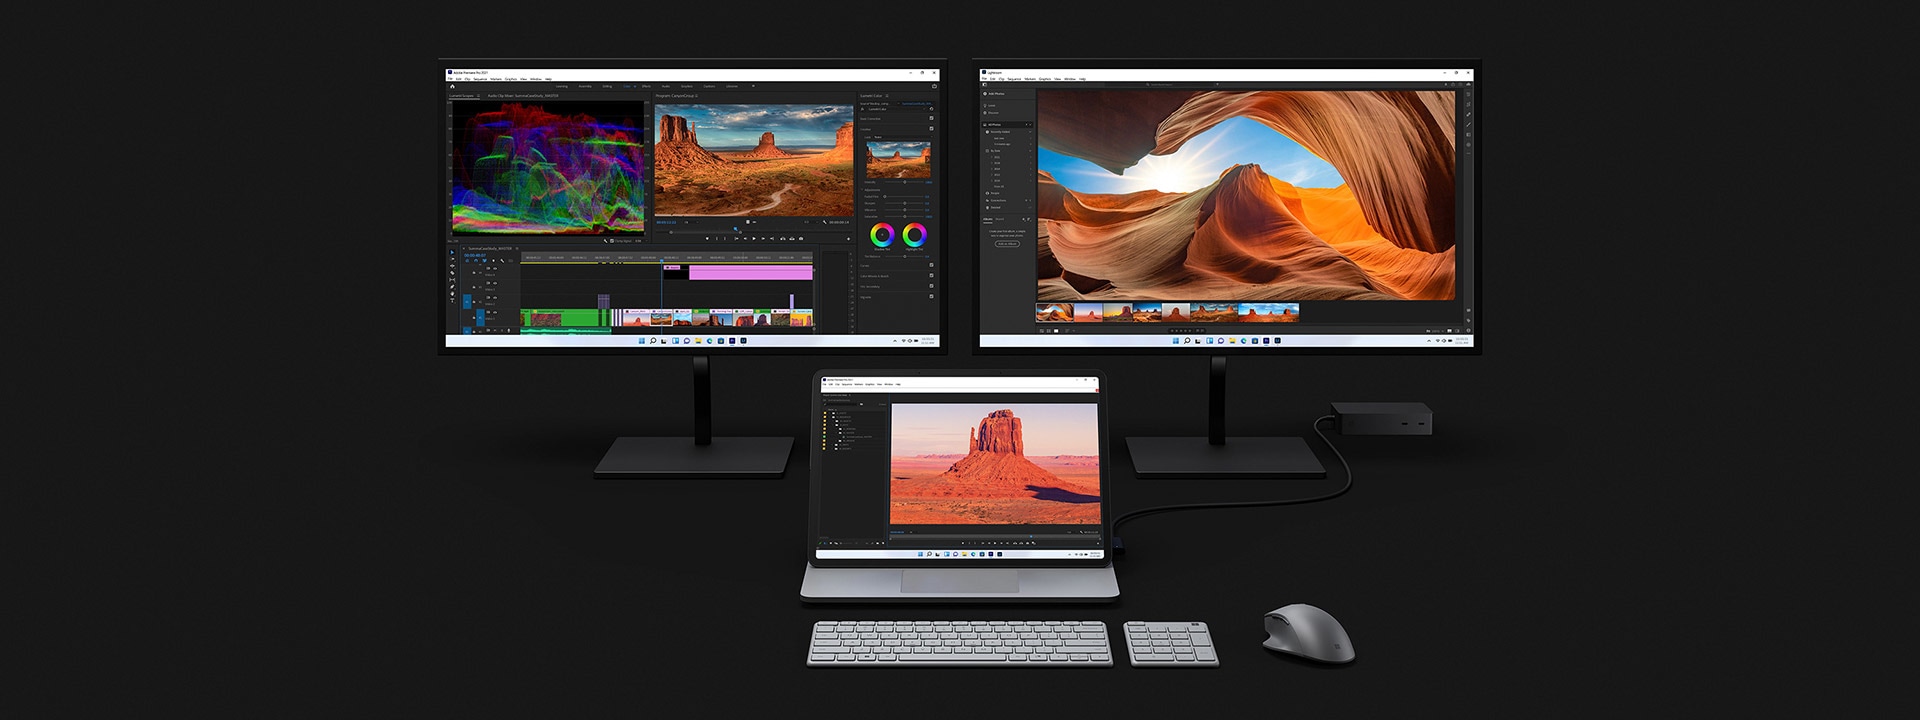 Surface Laptop Studio ที่เชื่อมต่อกับจอภาพขนาดใหญ่สองจอและใช้ตัดต่อวิดีโอ